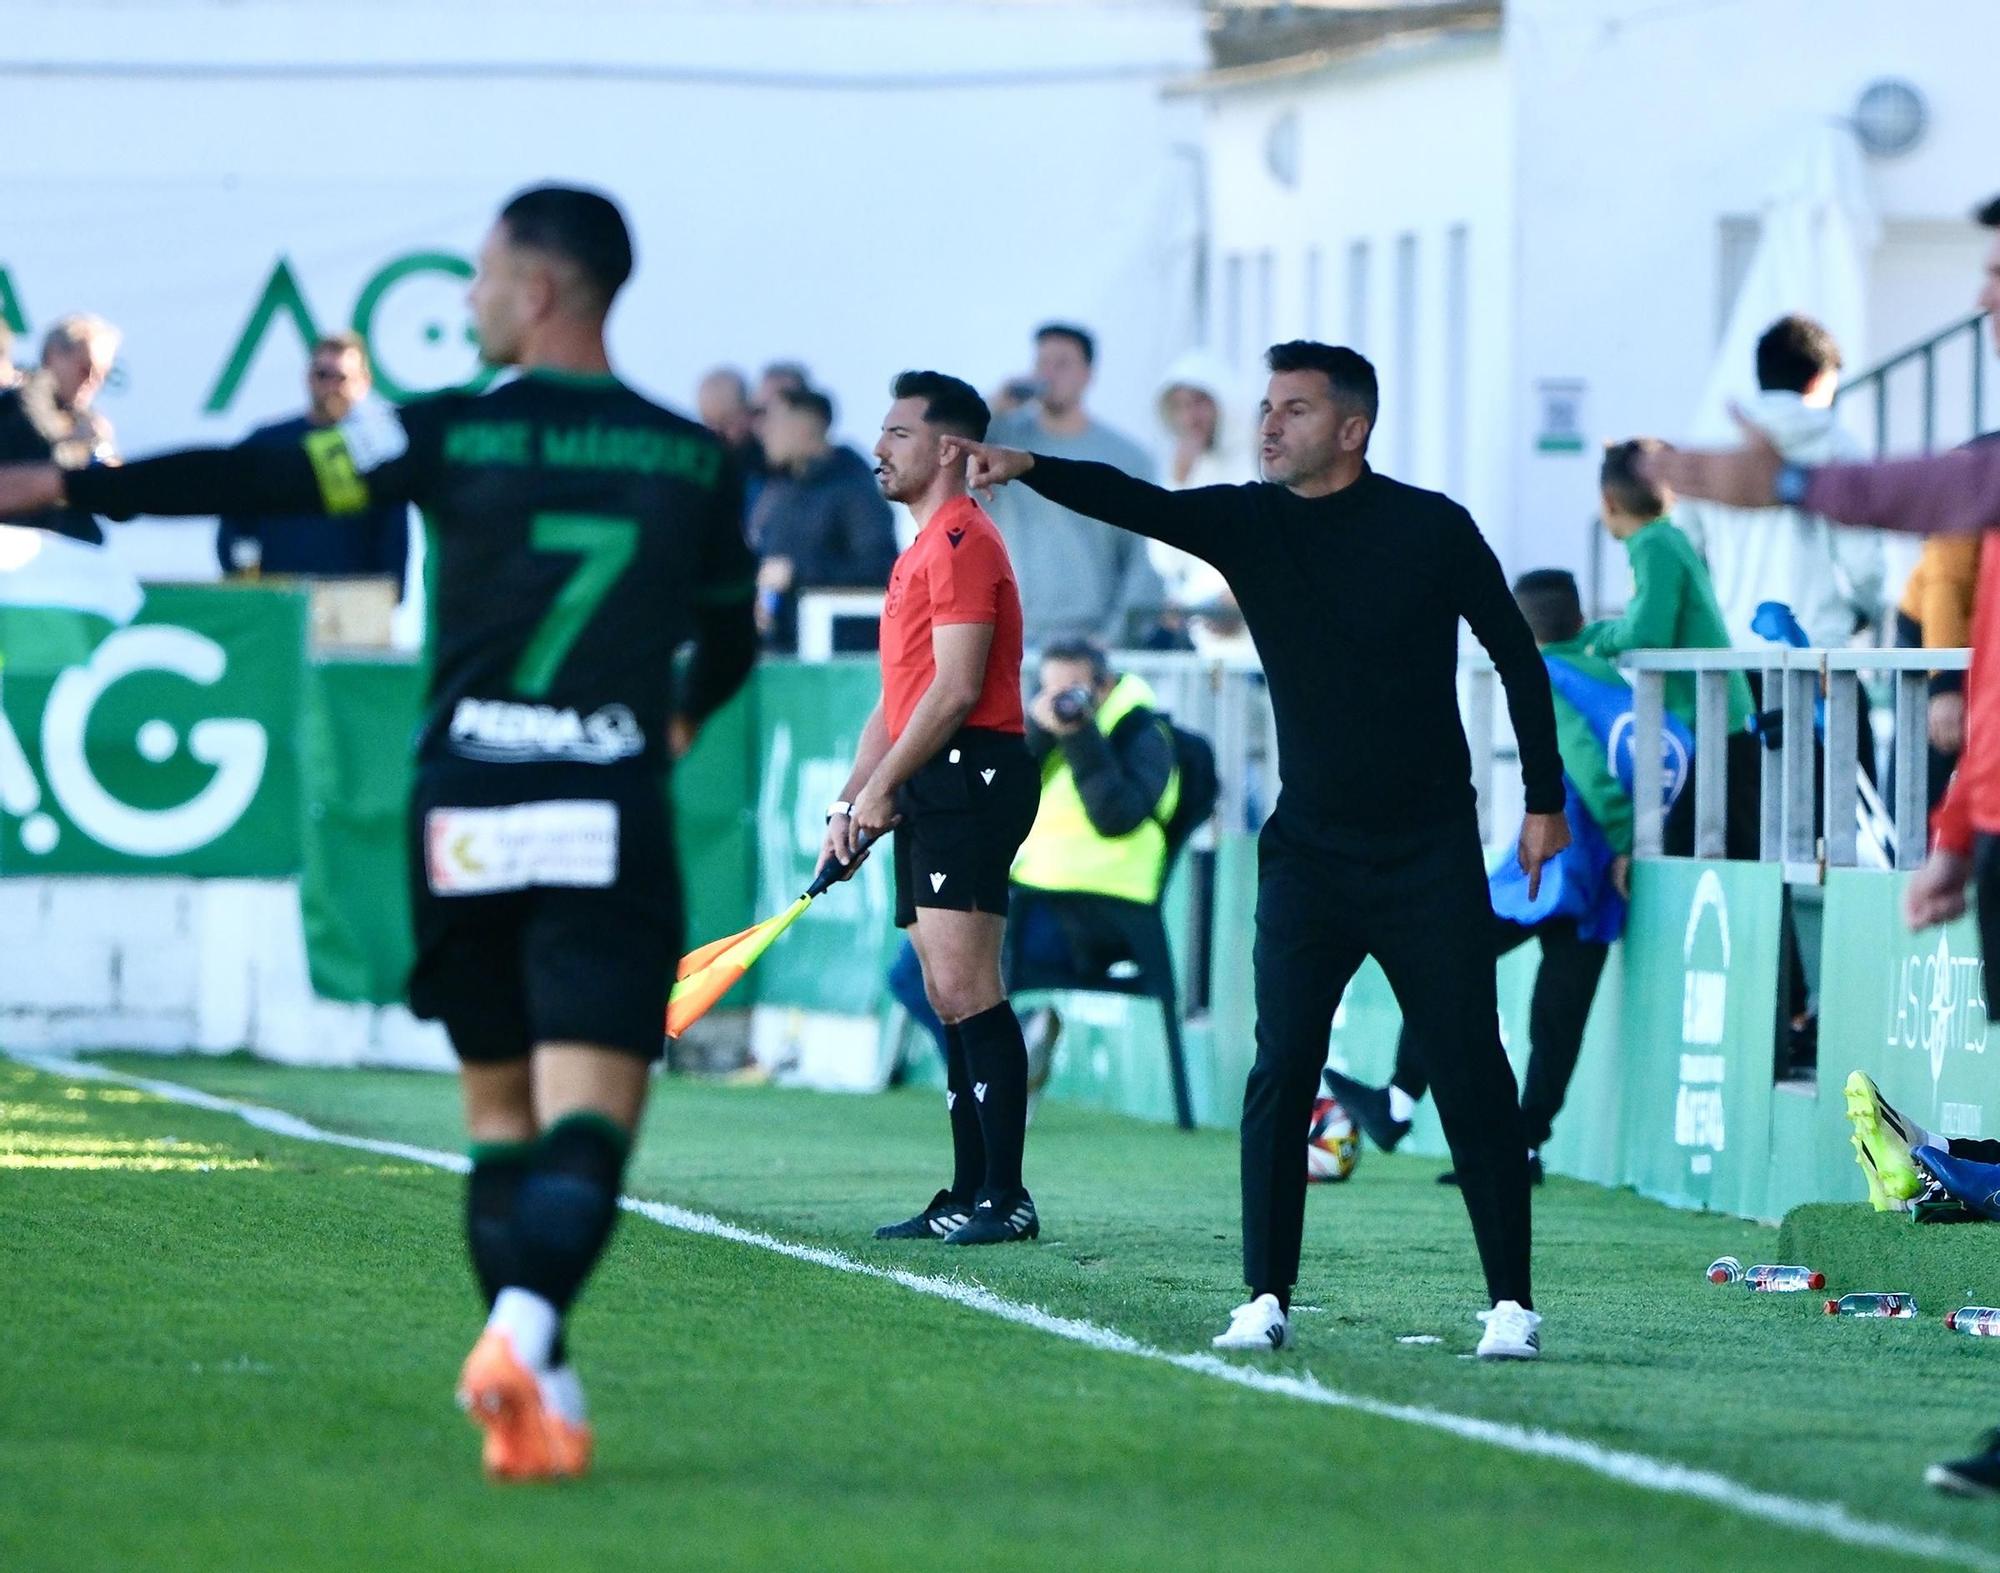 Atlético Sanluqueño - Córdoba CF : el partido de Primera Federación en imágenes